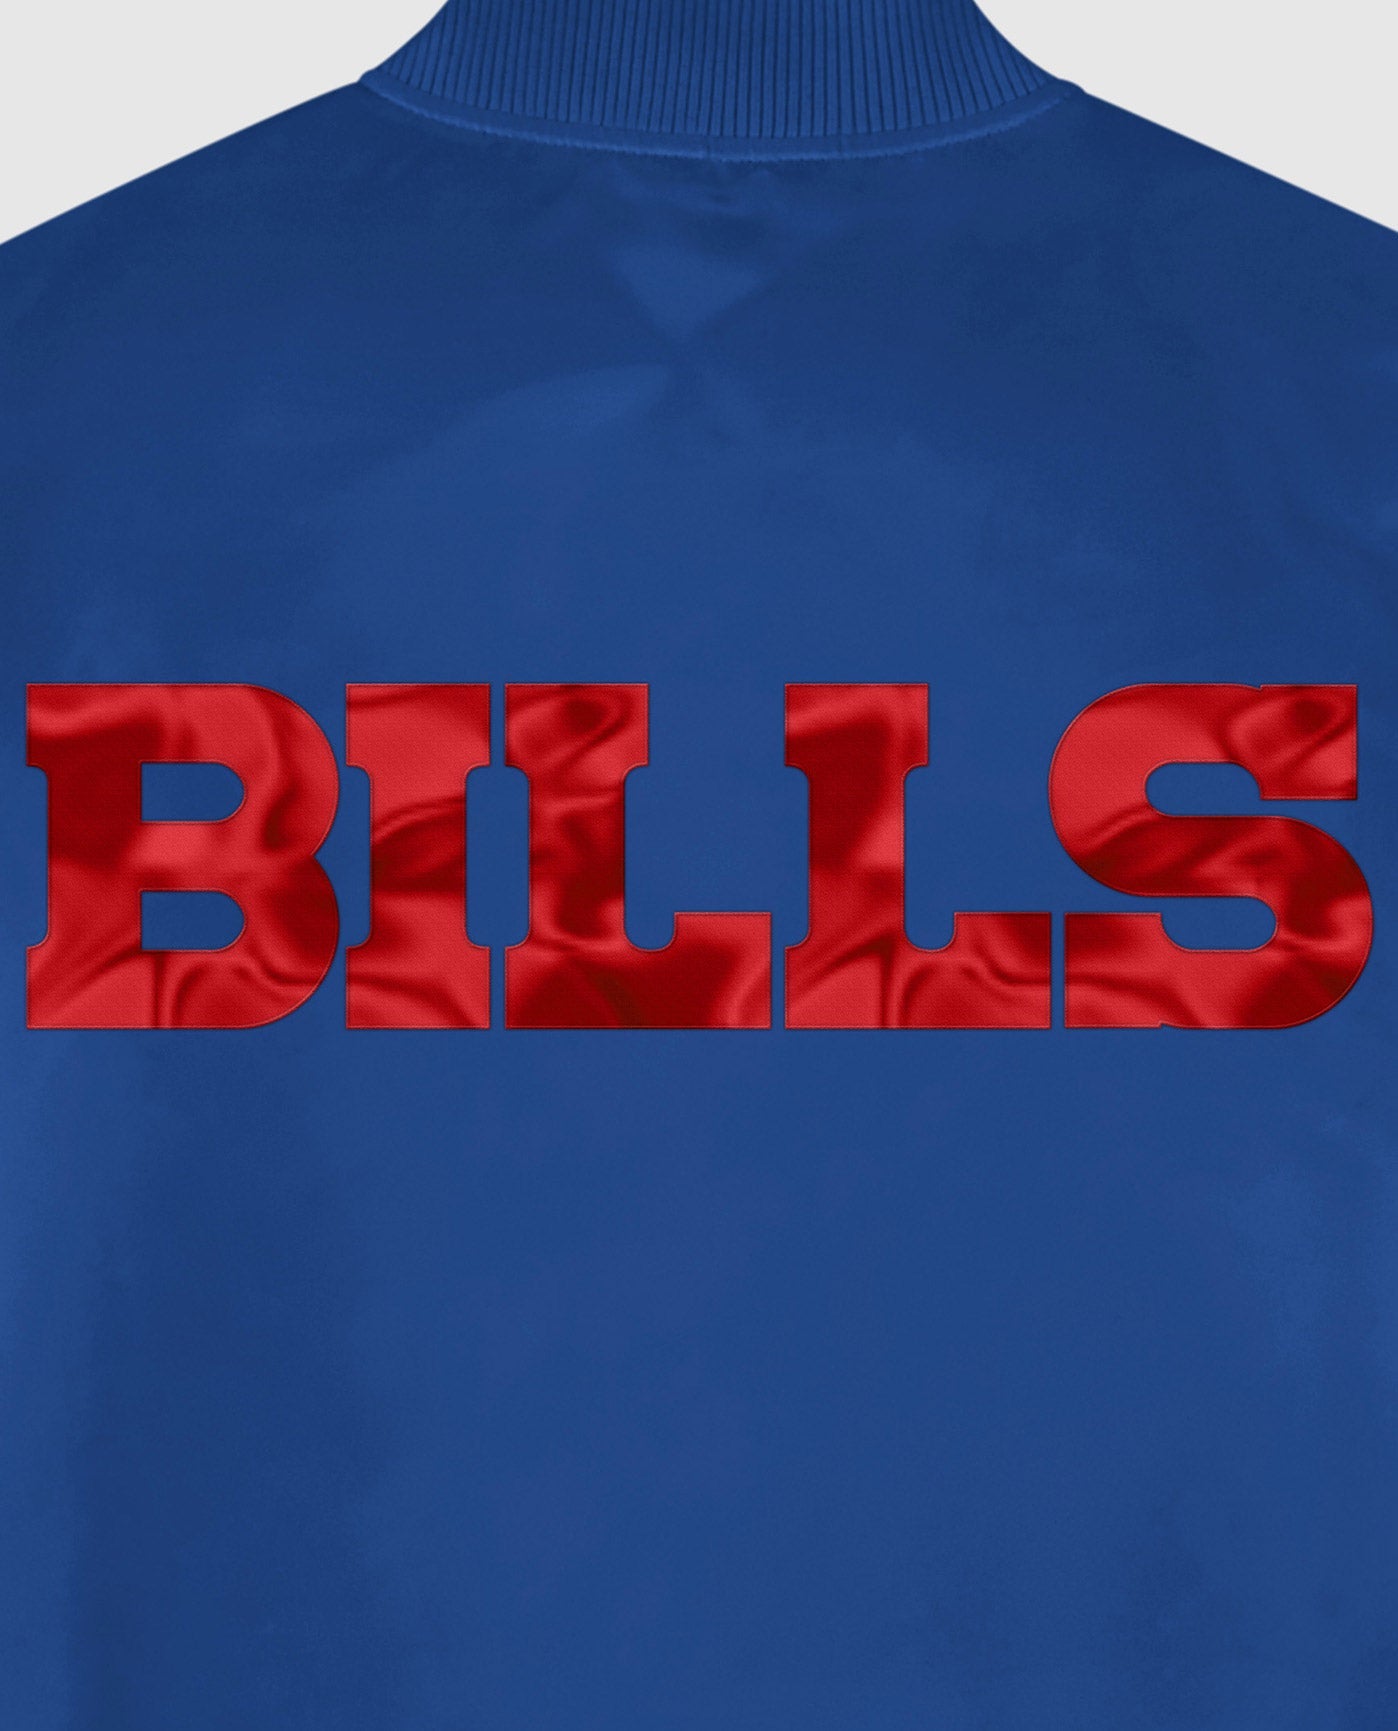 Bills Blue